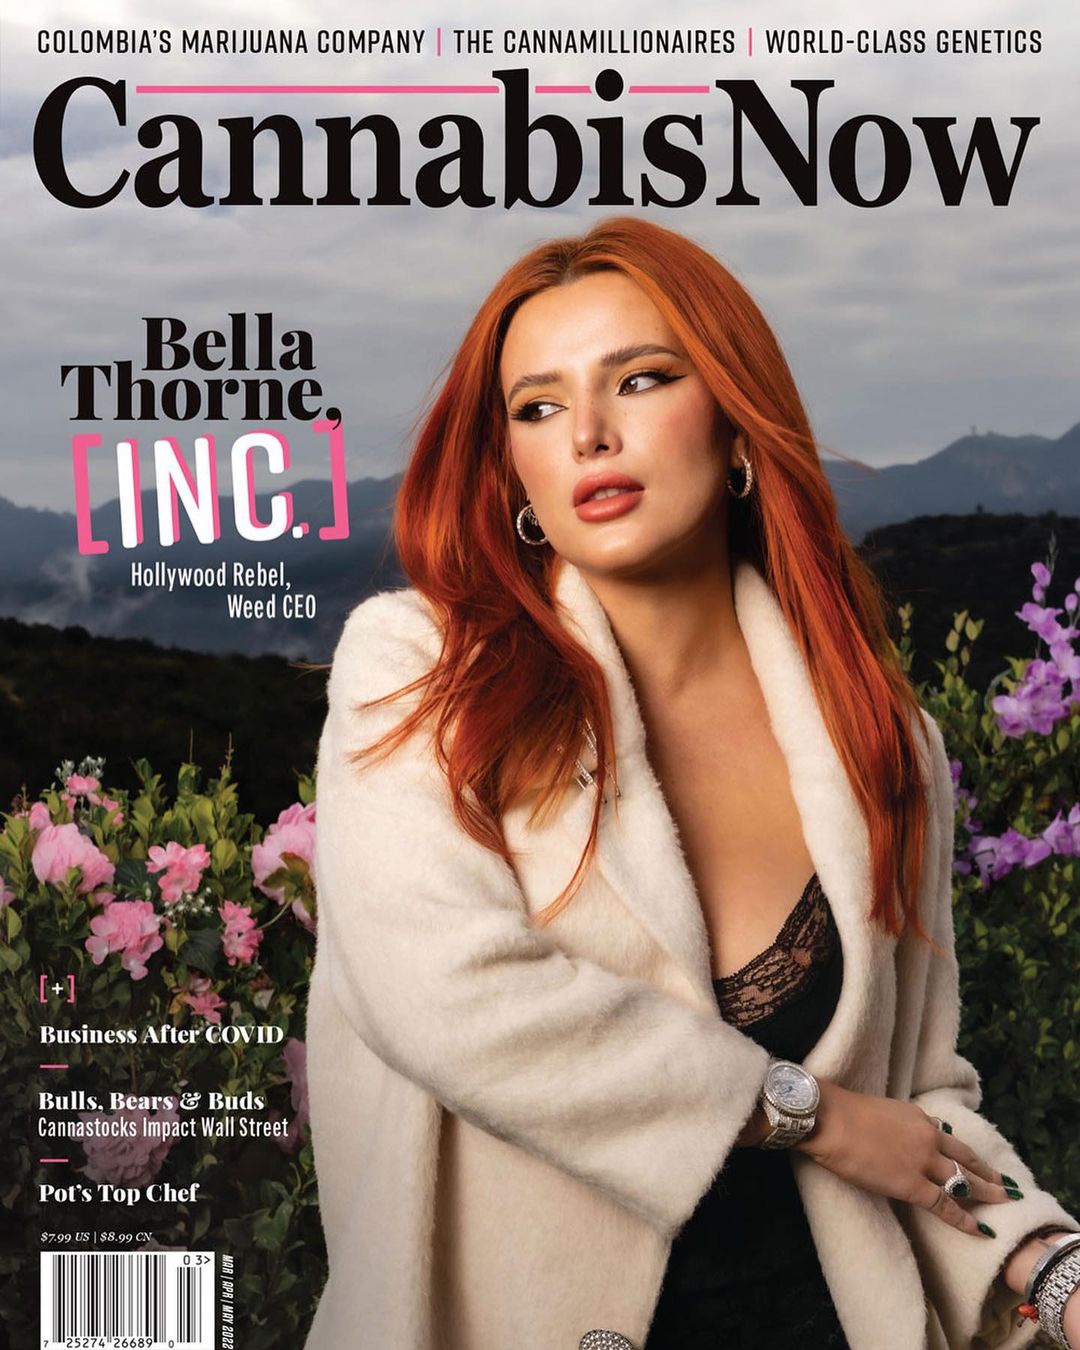 flyinnn high ????????⁣ check me out on the April issue of @cannabisnow !! #cannabisnow